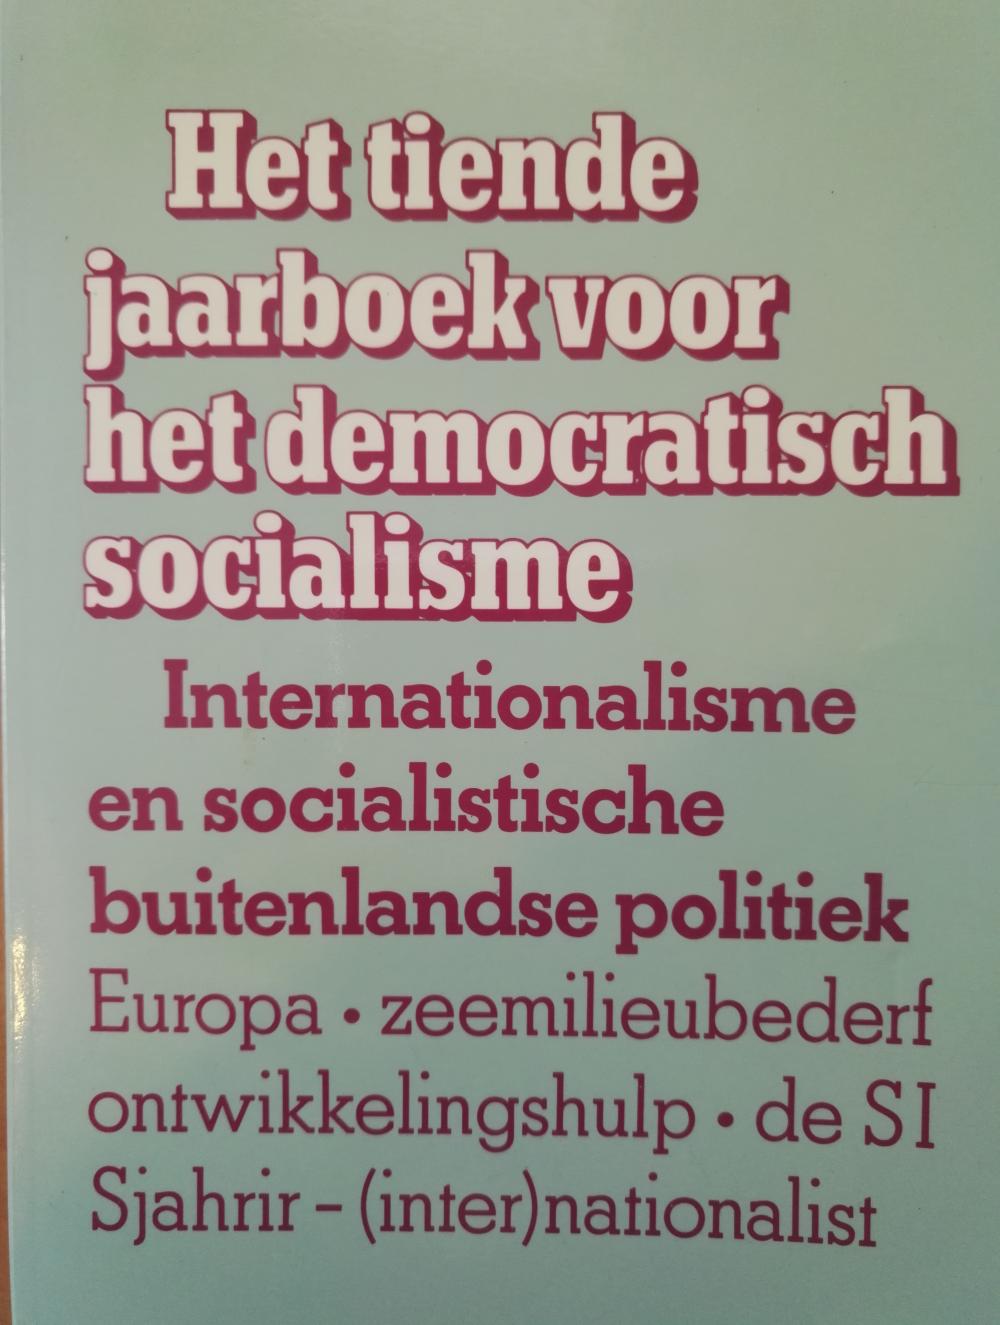 Internationalisme en socialistische buitenlandse politiek